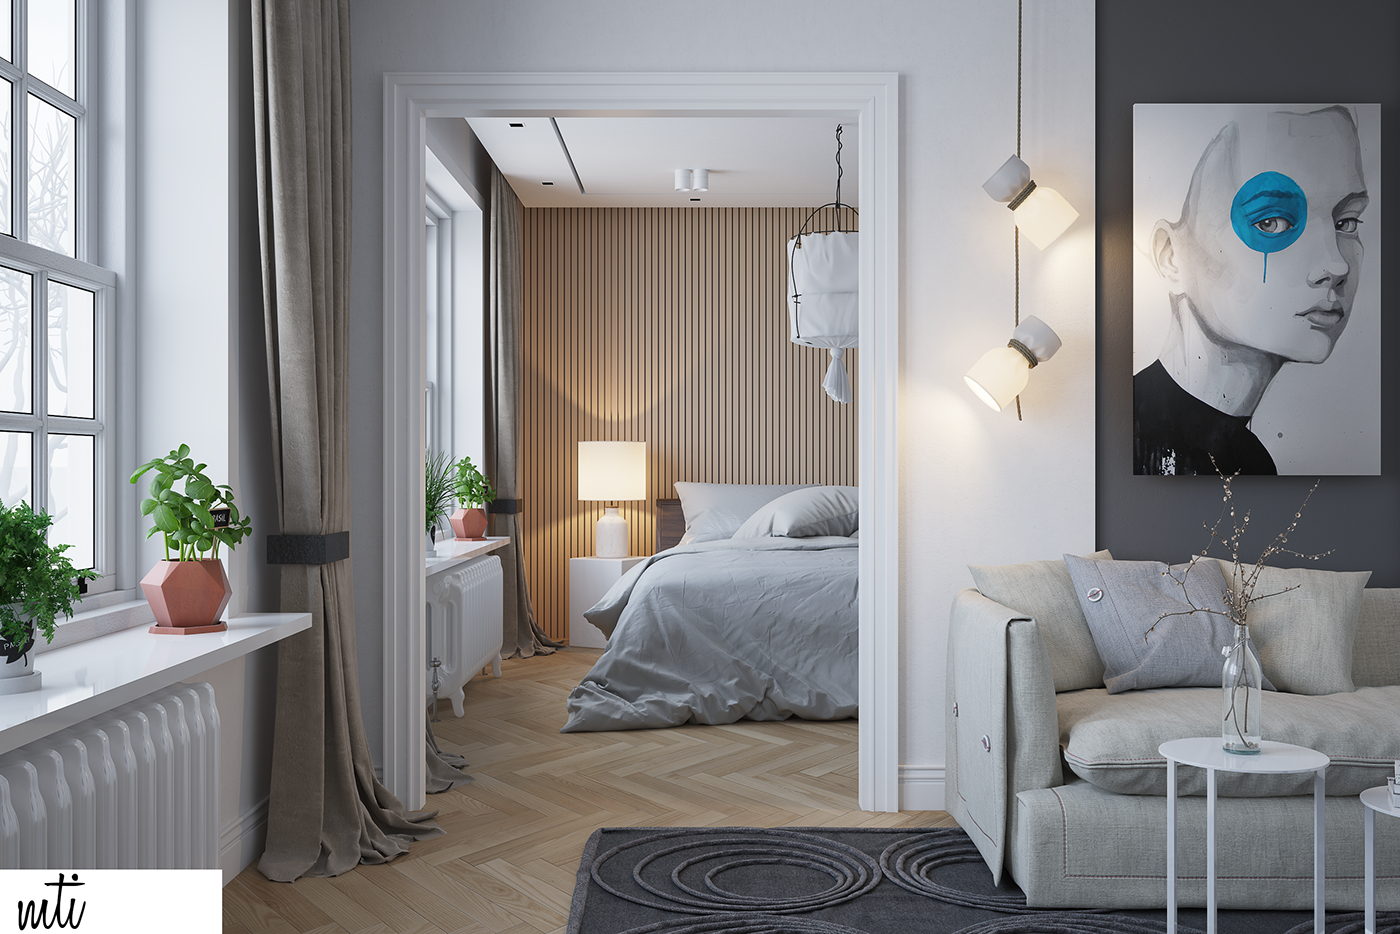 #interior #Design #apartment #luxury #living #bedroom